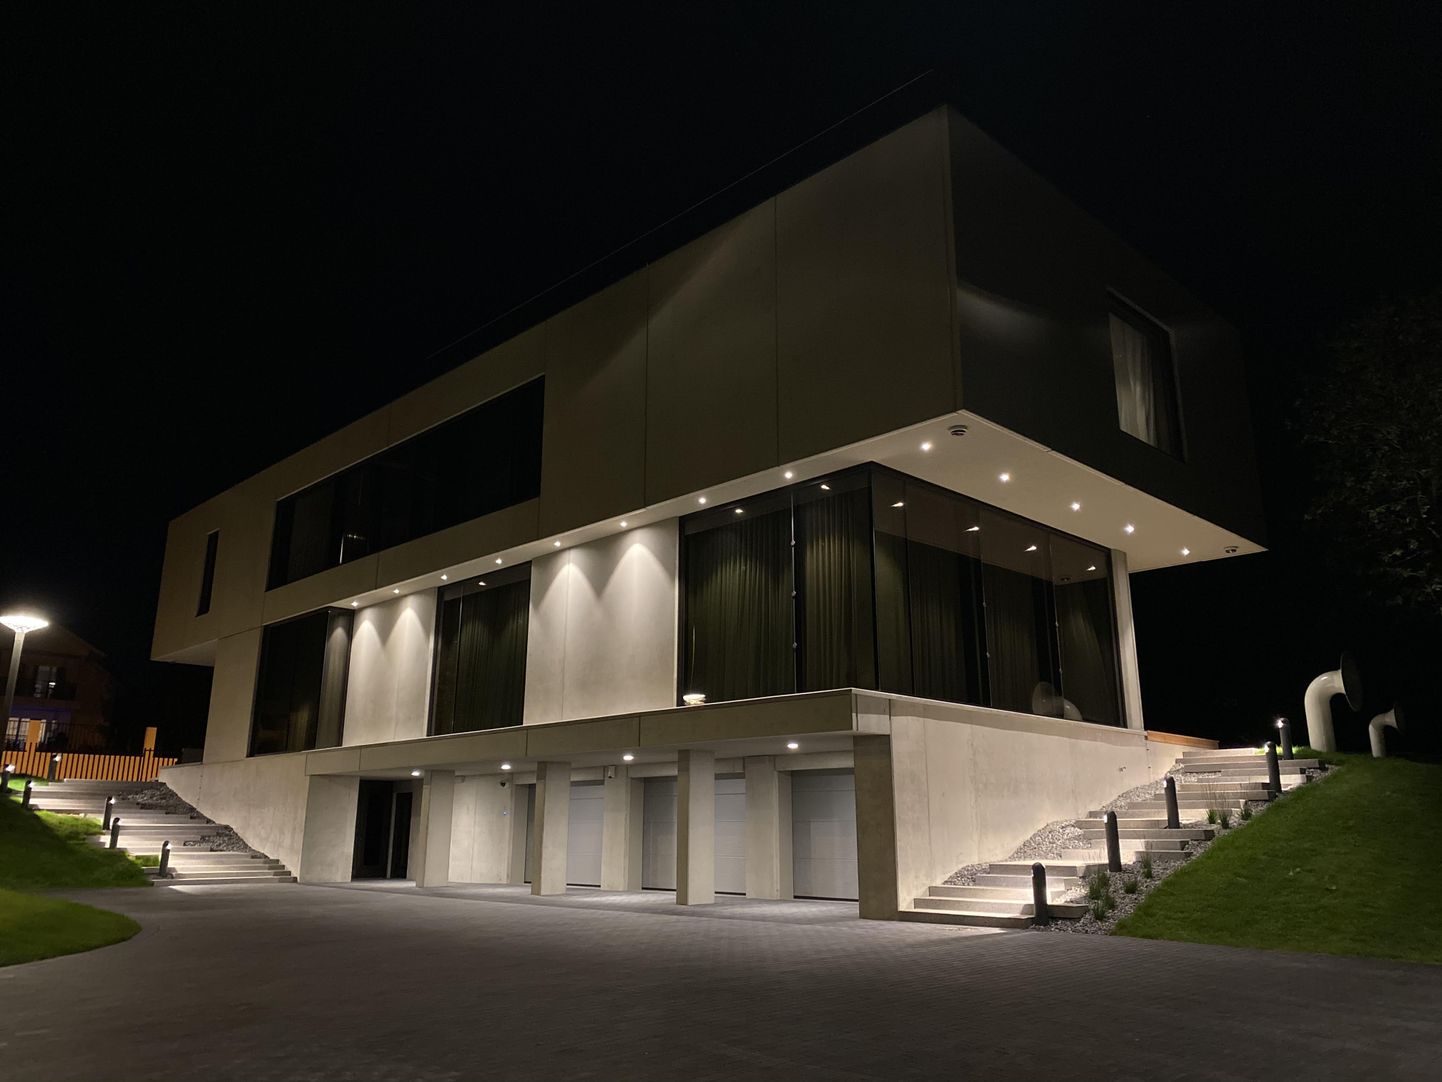 Частный дом в Пирита номинирован на участие в конкурсе на лучшее бетонное строение 2020 года.